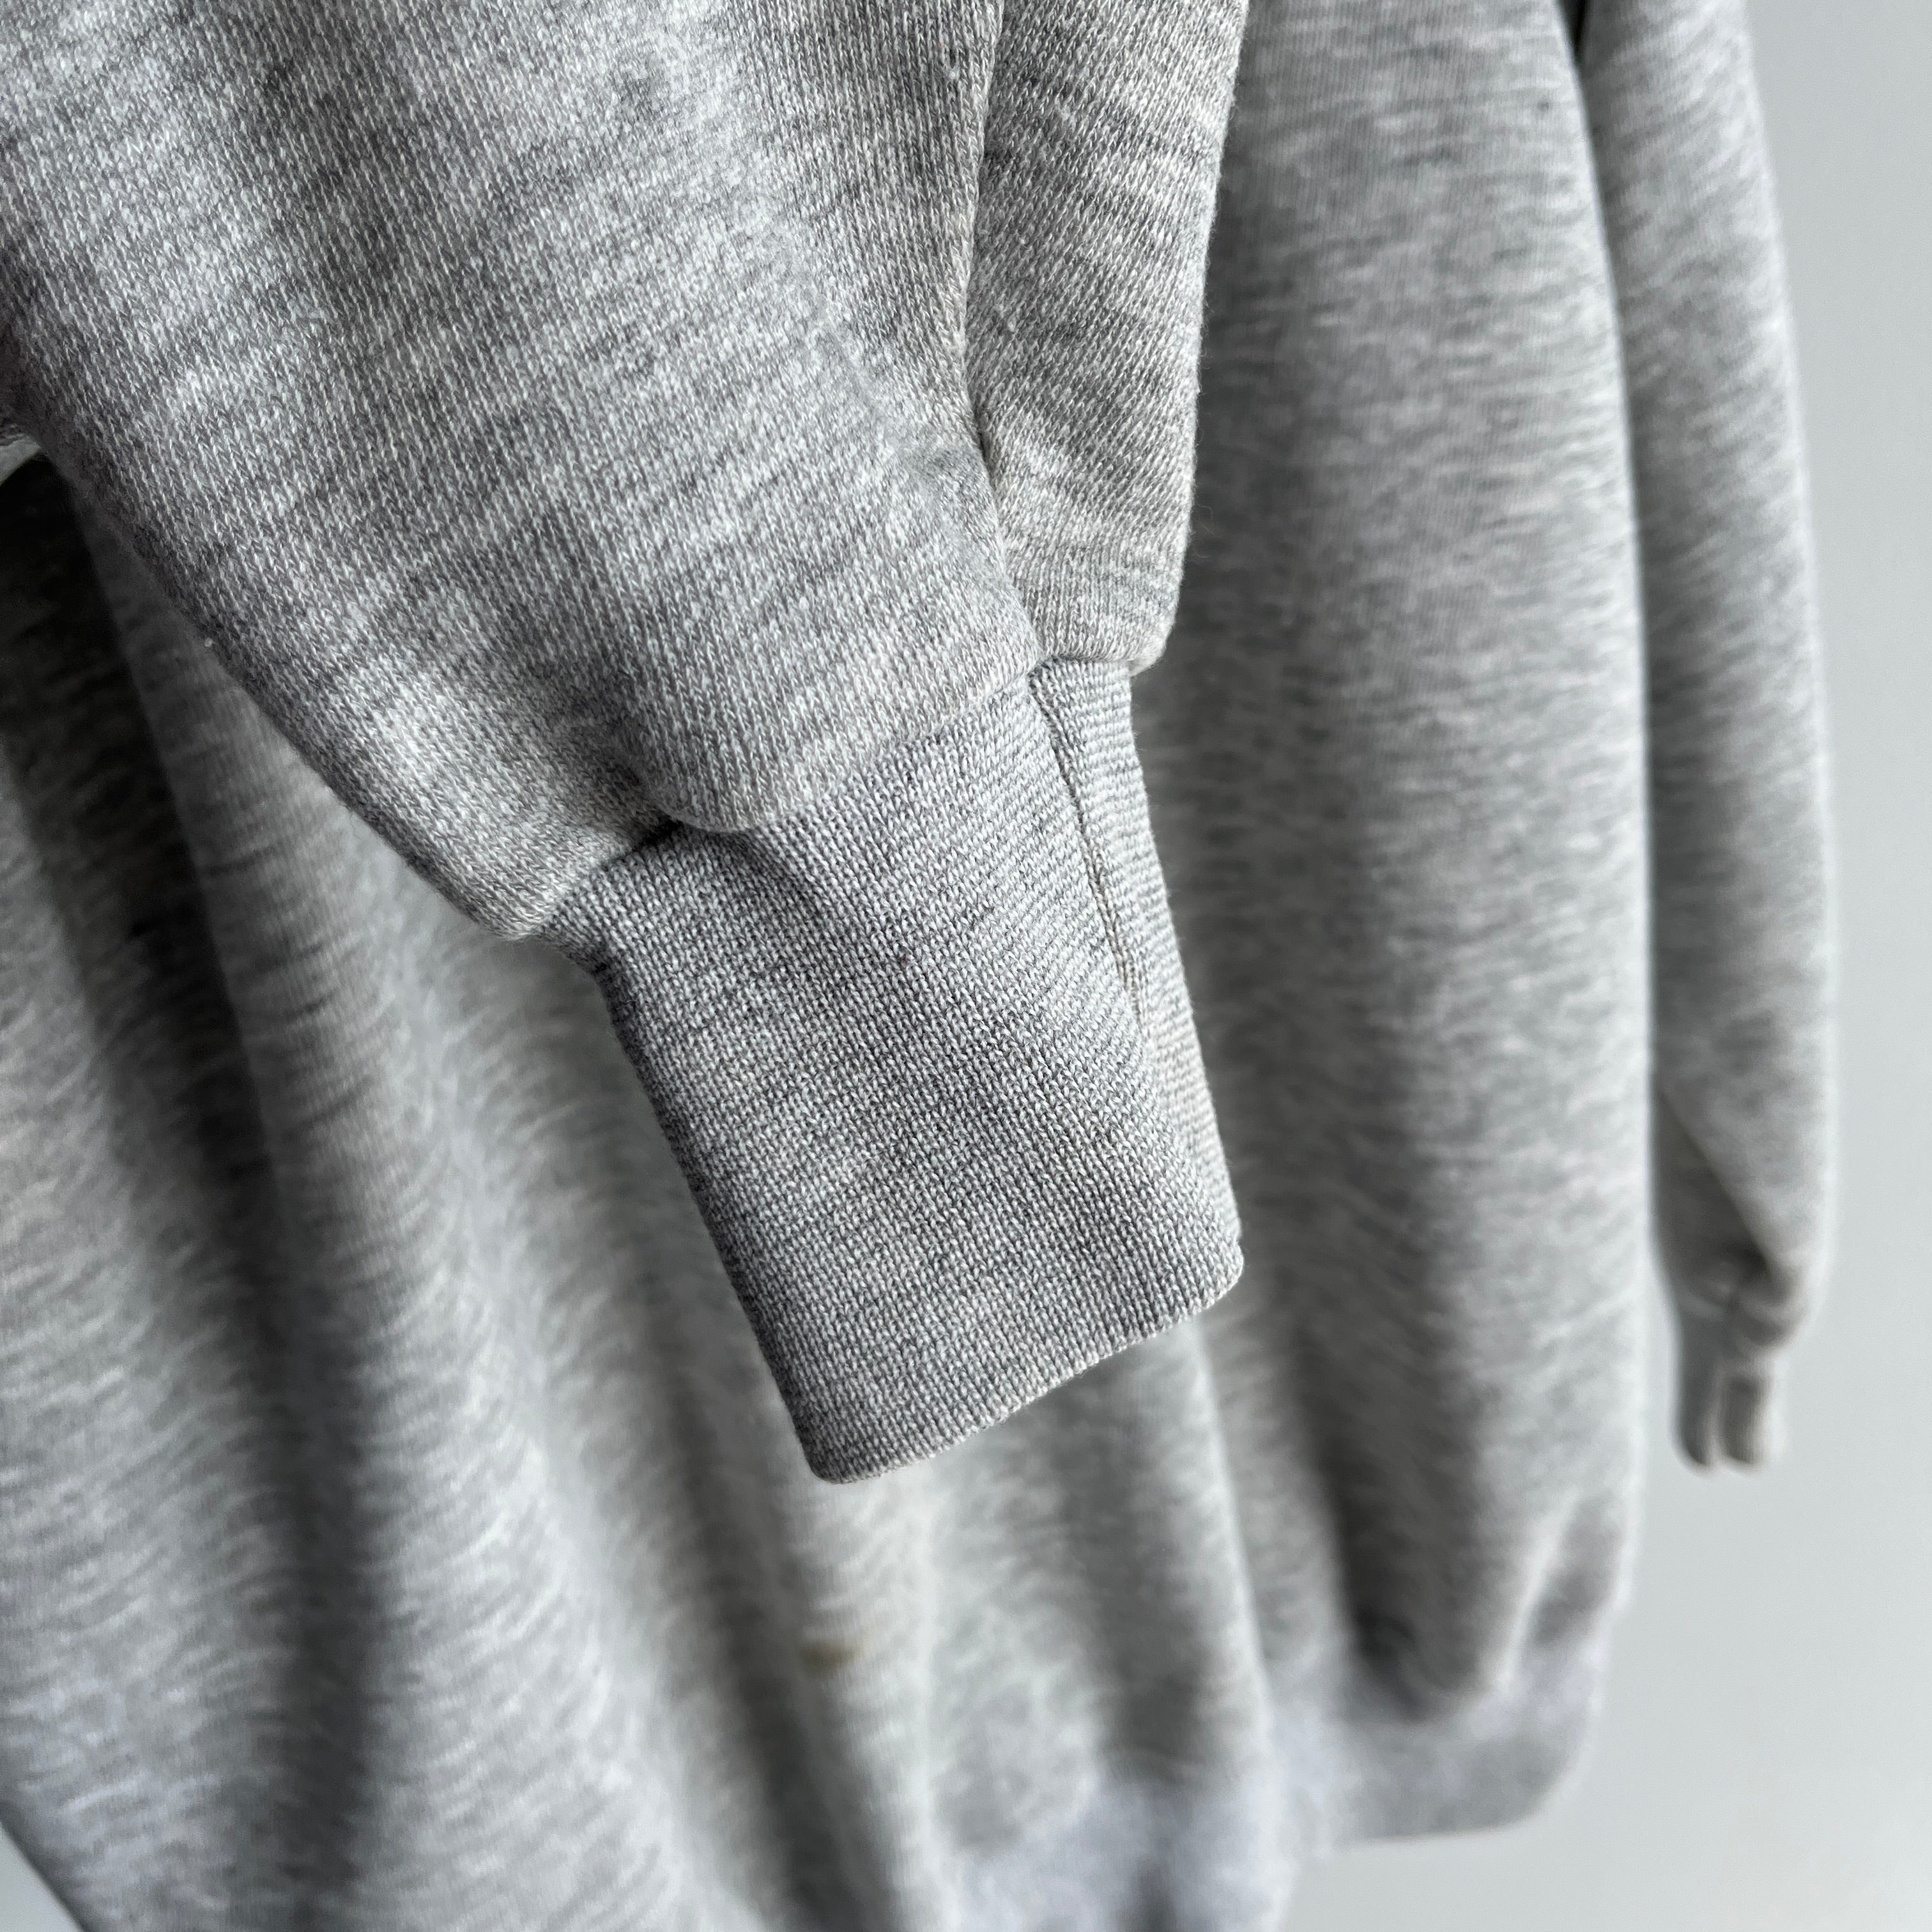 1980s Blank Gray Sweatshirt by Ultra Sweats